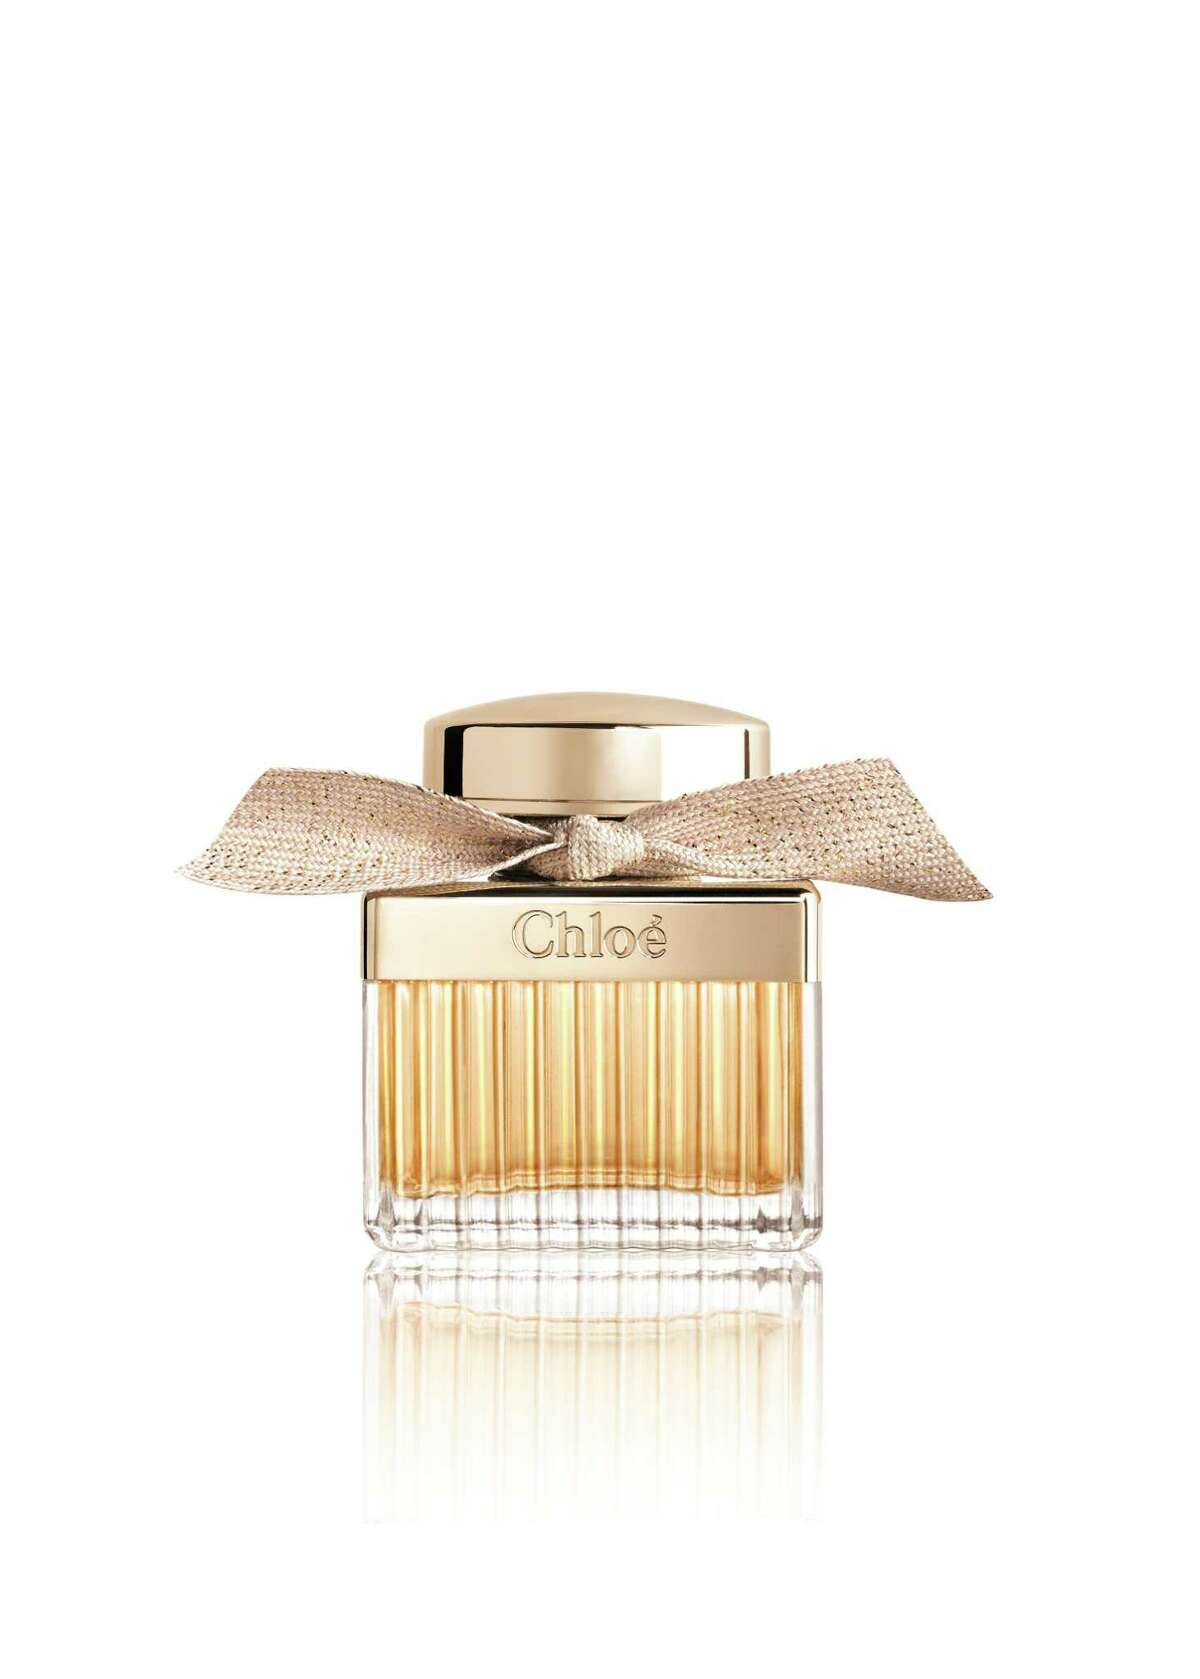 Parfum Louis Vuitton Attrape Reve Sephora Canada